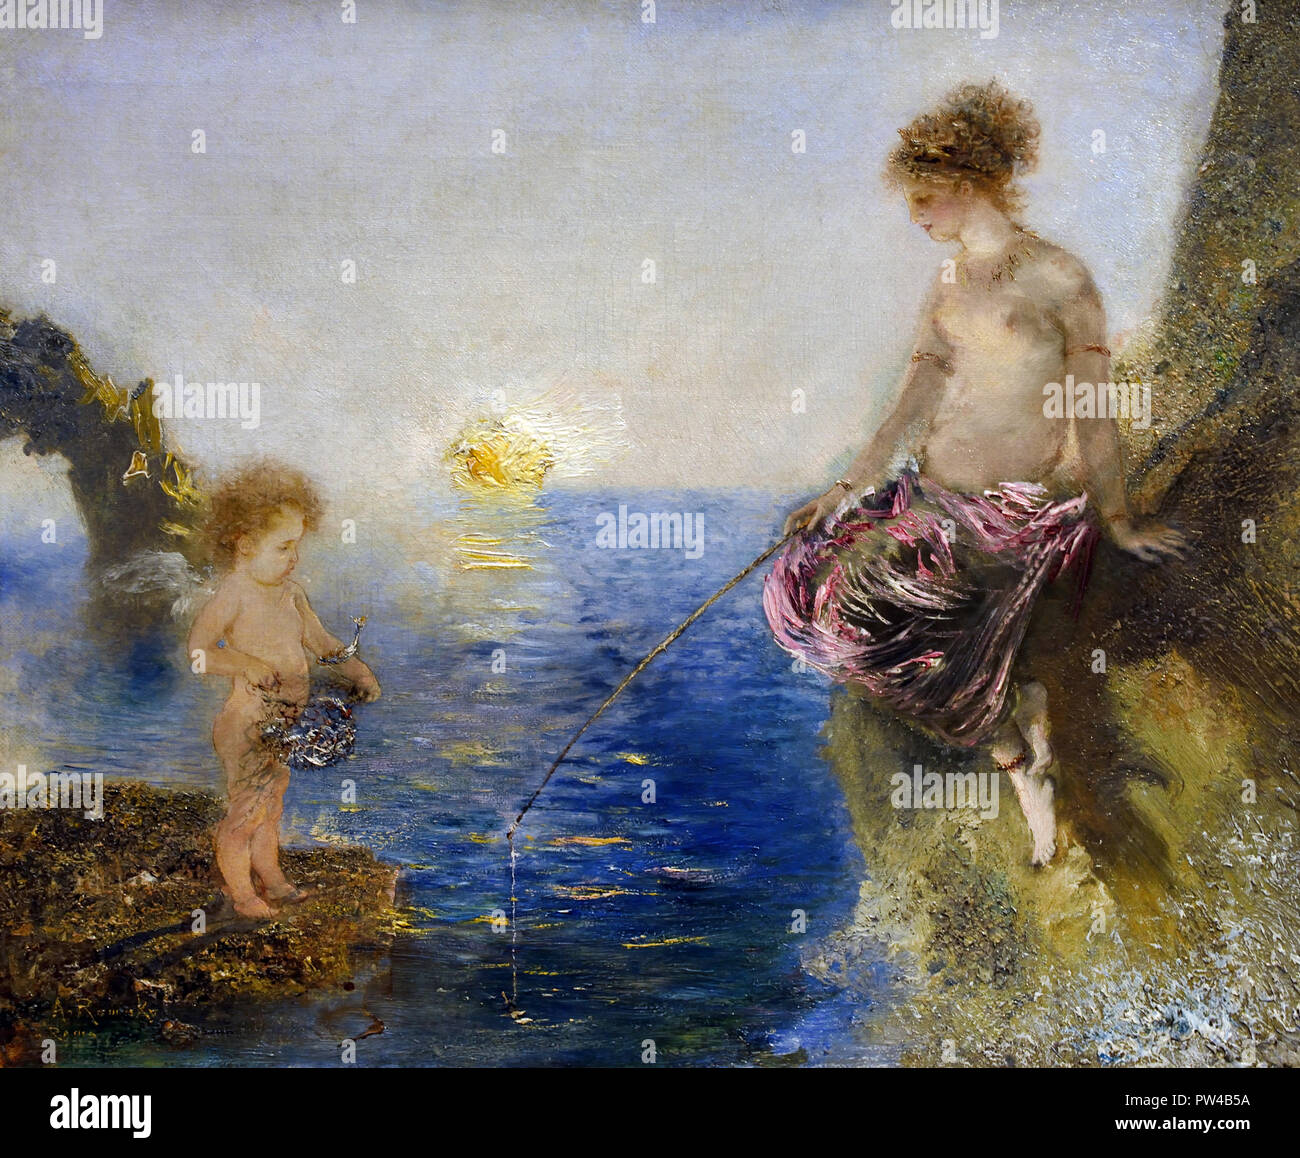 La pêche de l'amour 1875 par Anton Romako 1832 - 1889 peintre autrichien. L'Autriche . ( Anton Romako a été l'un des grands pionniers du modernisme ) Banque D'Images